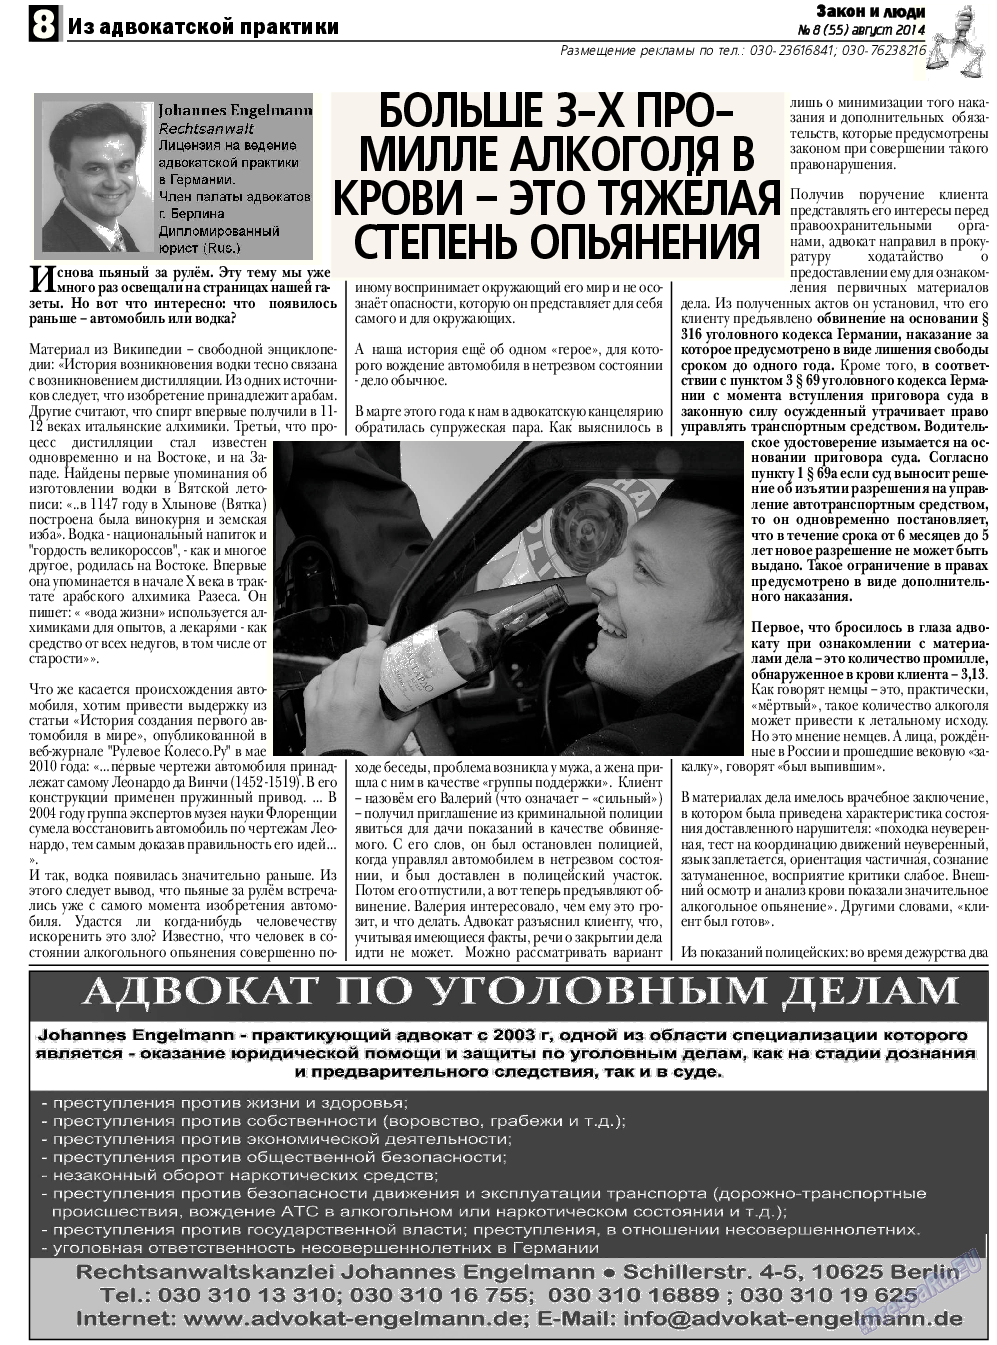 Закон и люди, газета. 2014 №8 стр.8